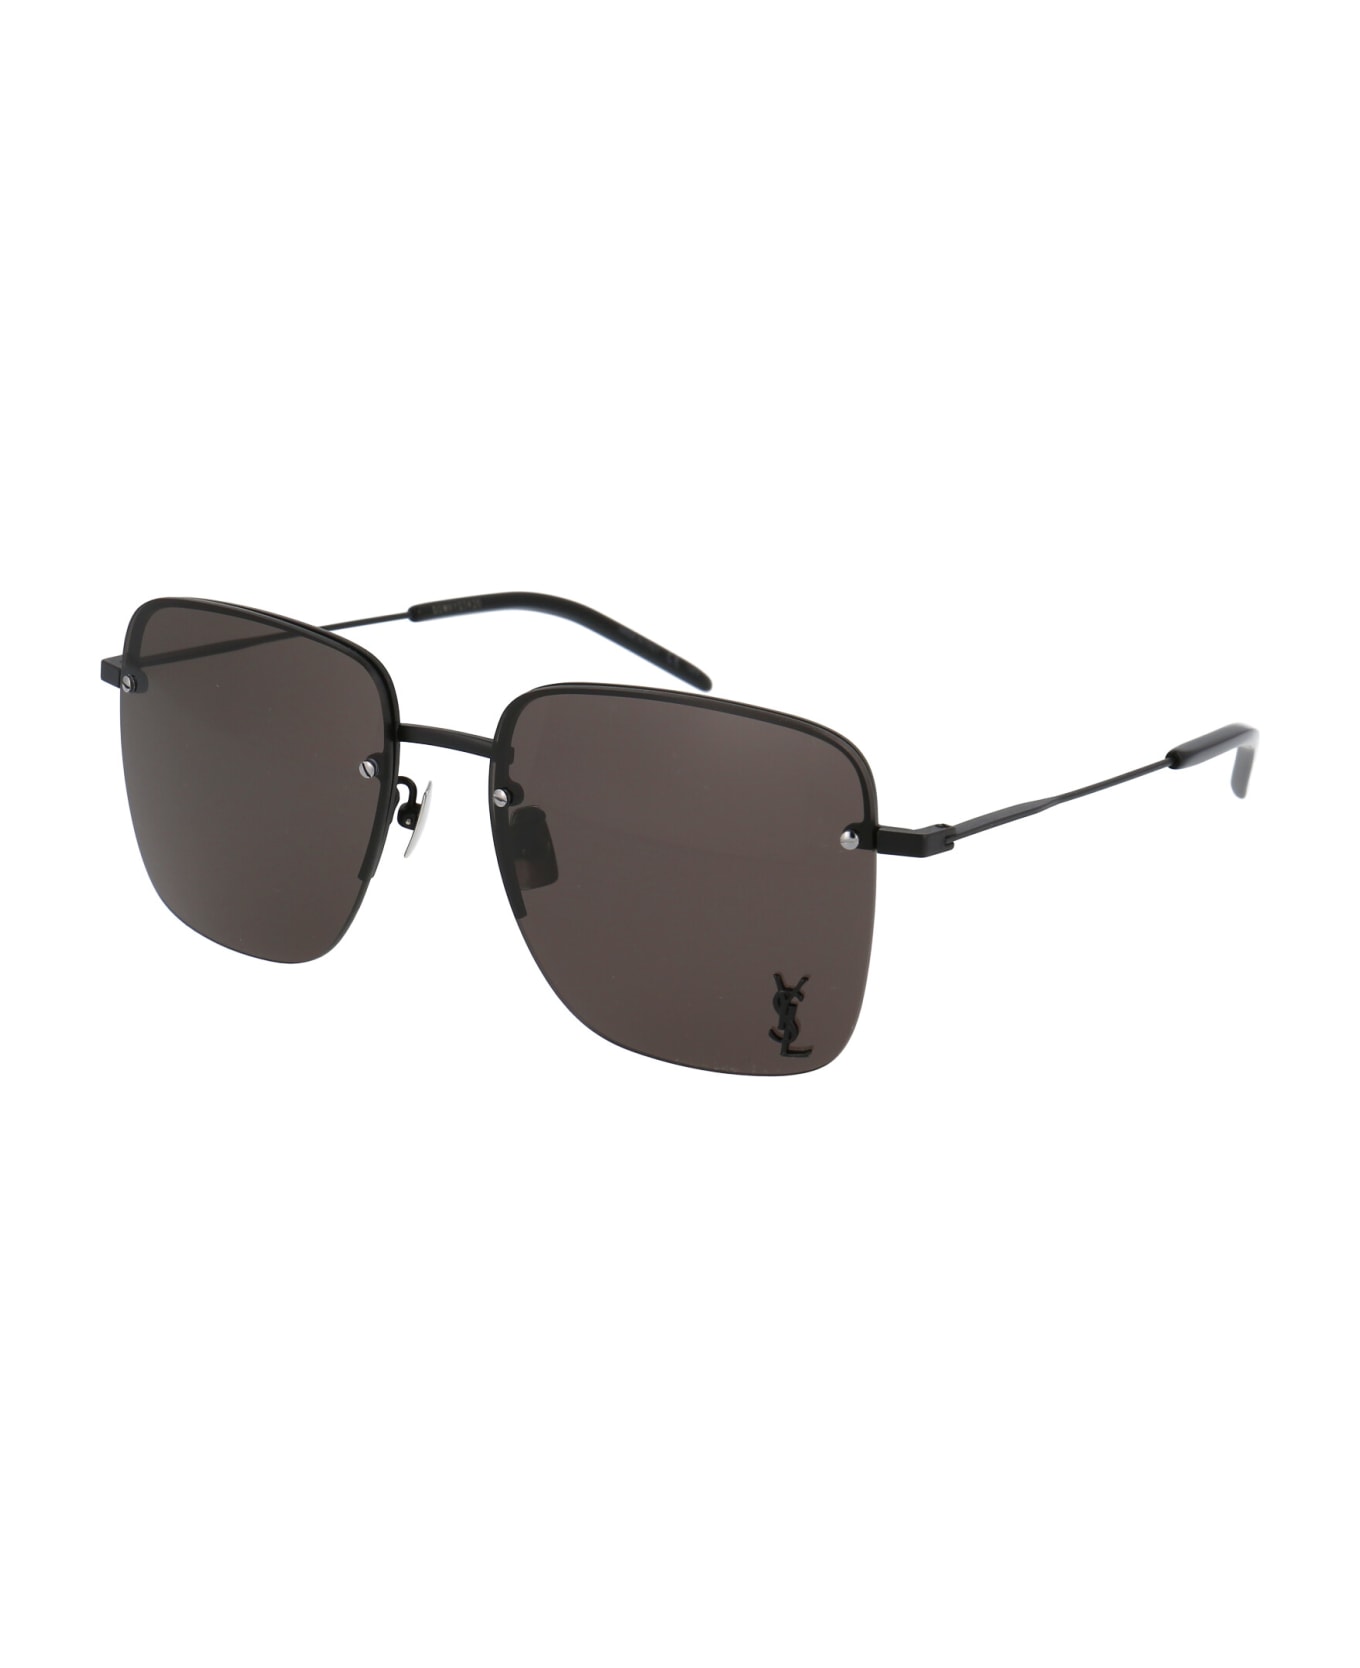 Saint Laurent Eyewear Sl 312 M Sunglasses - 001 BLACK BLACK BLACK